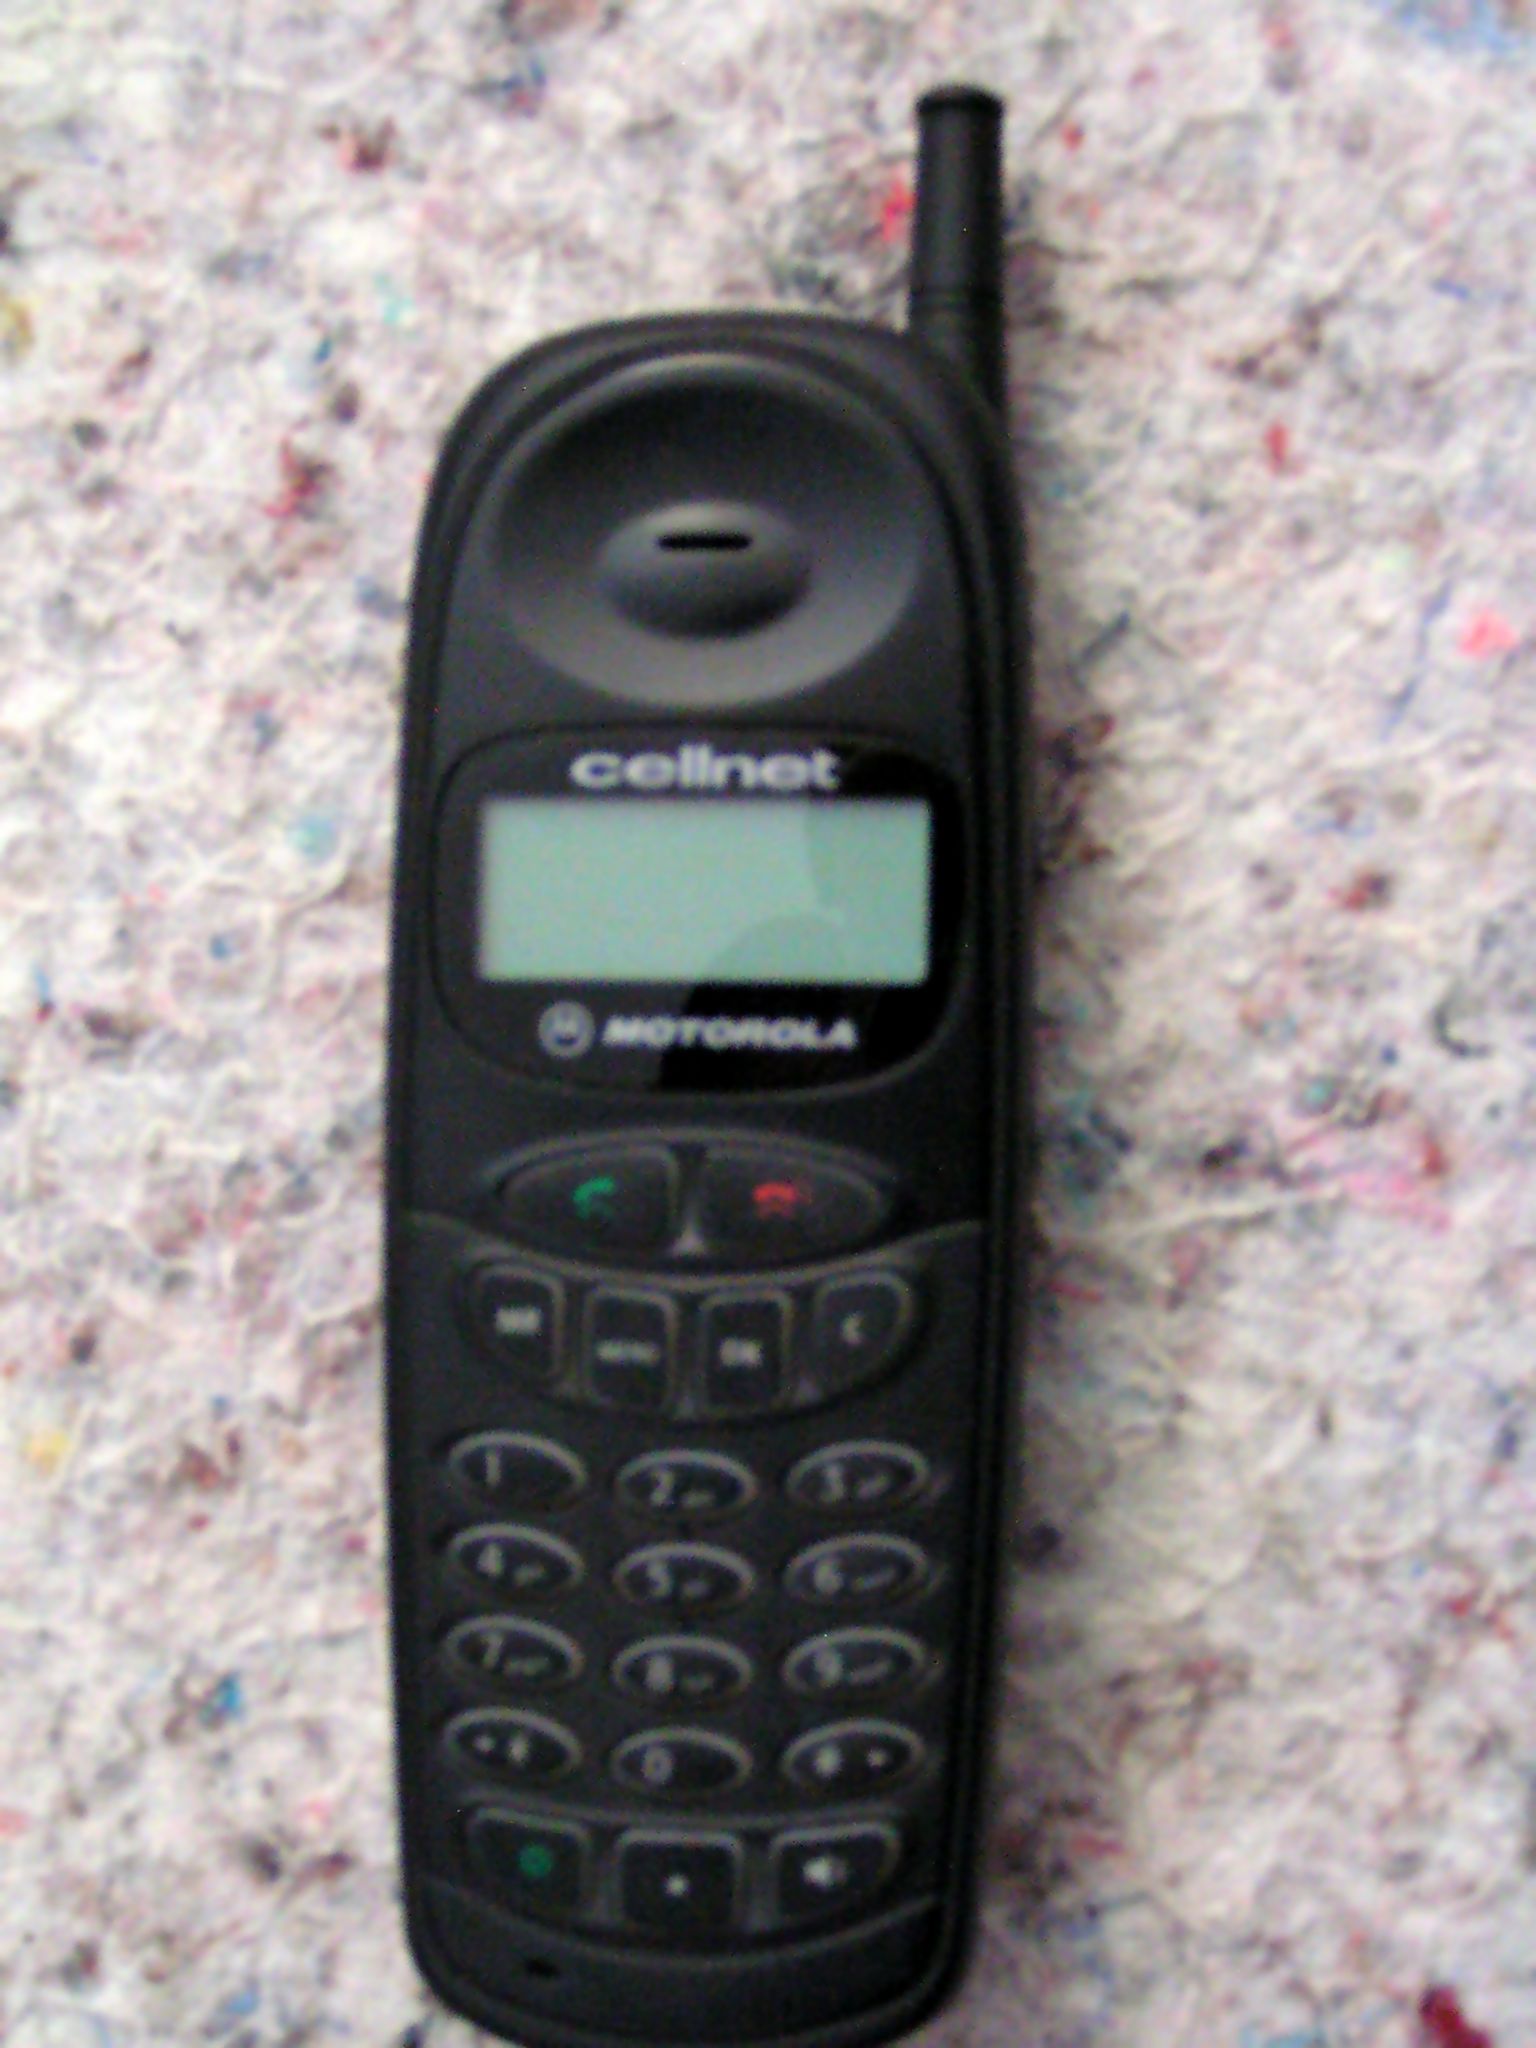 Motorola cellnet.jpg